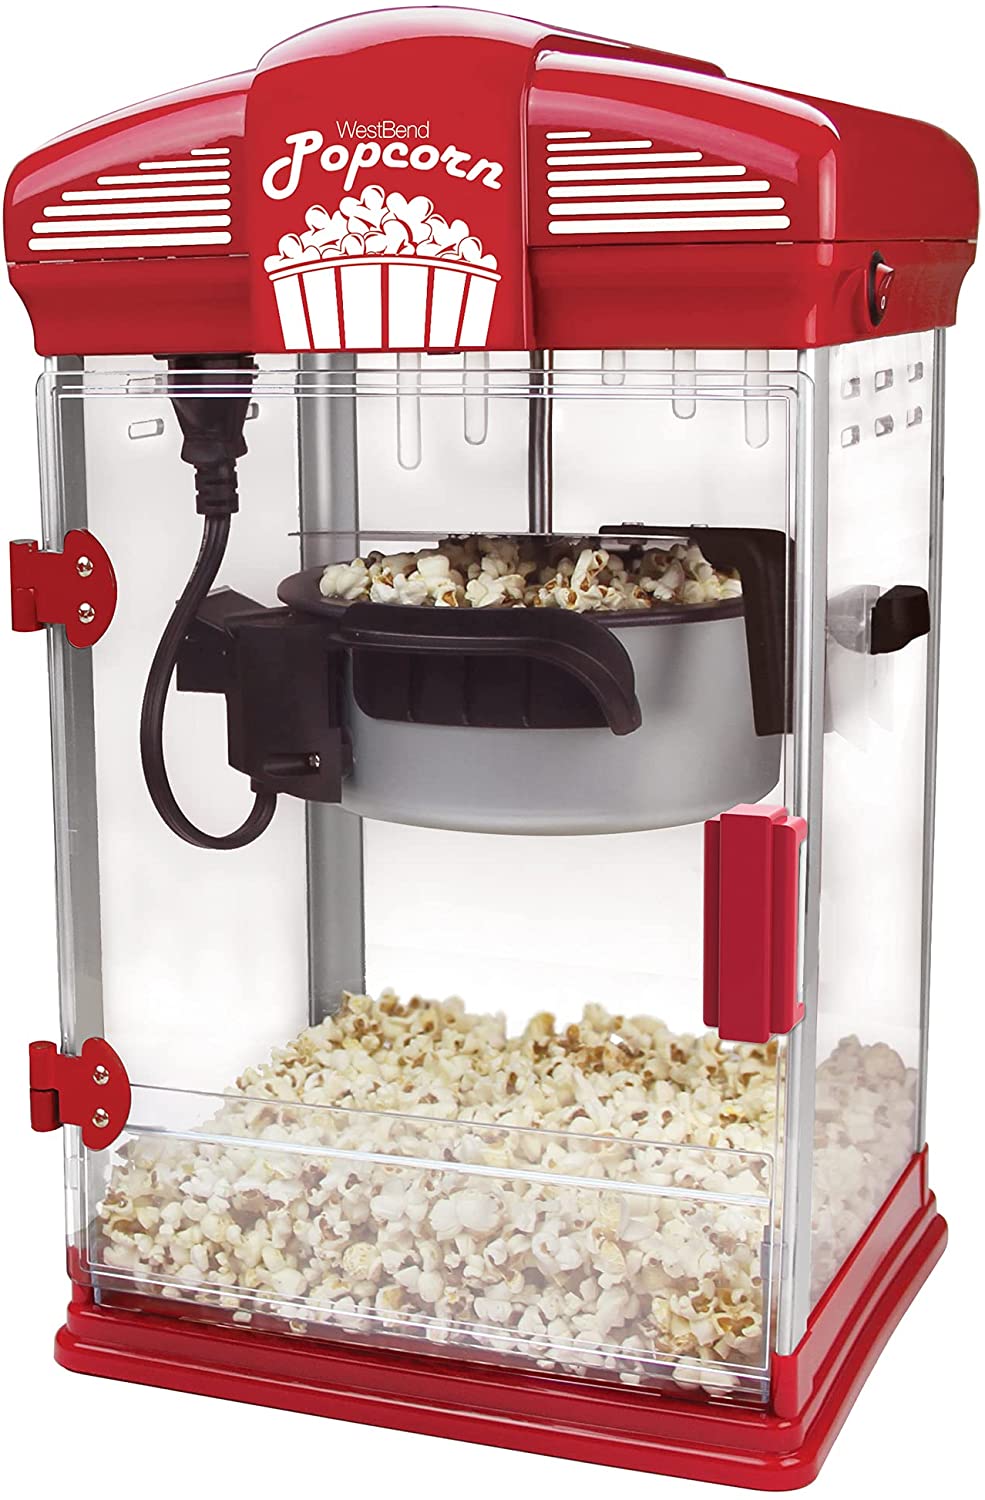 West Bend 82707 Popcorn Machine, Red